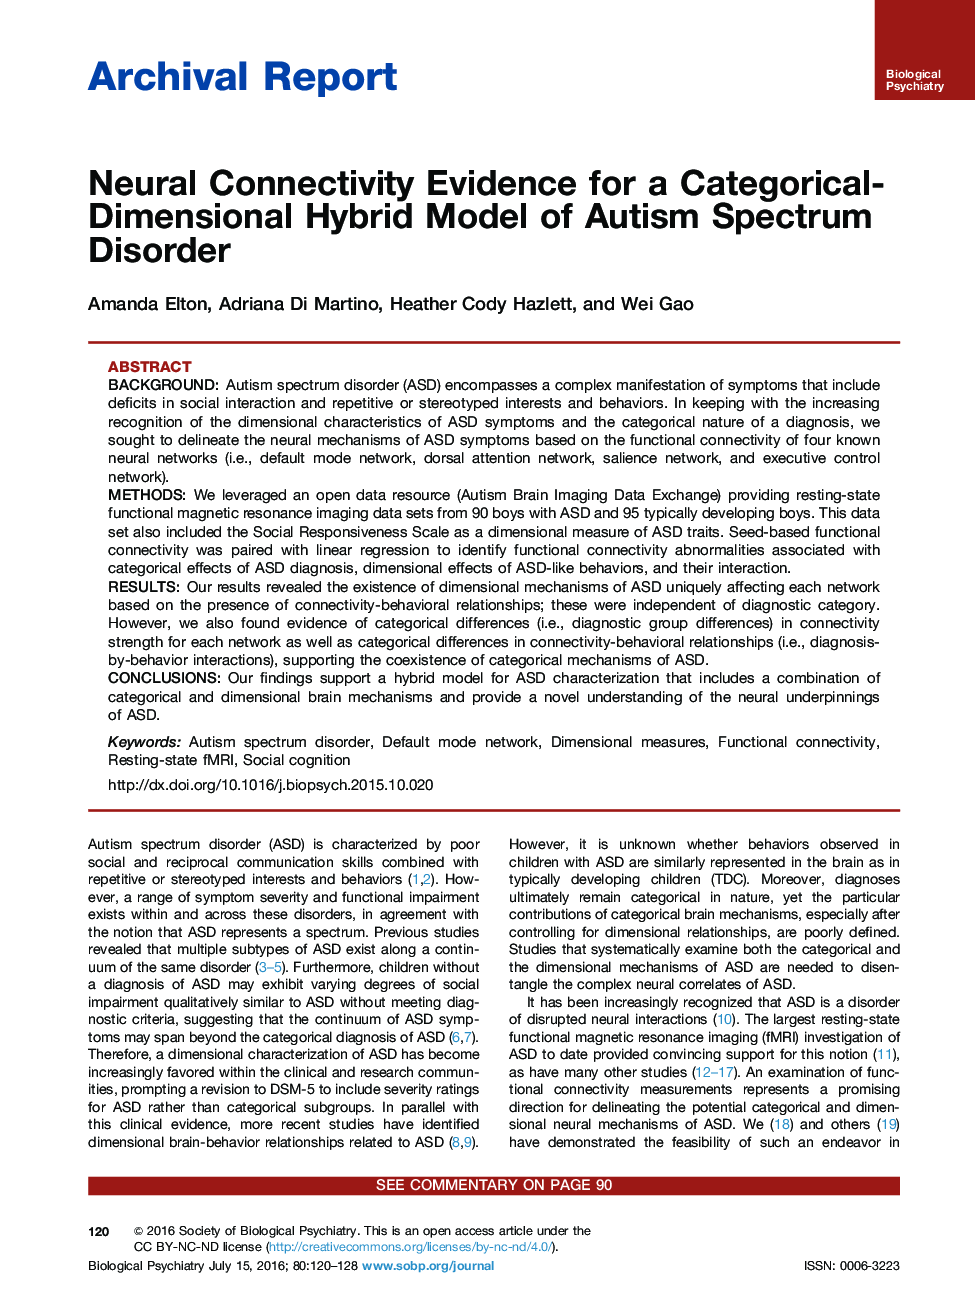 شواهد اتصال عصبی برای یک مدل هیبرید طبقه بندی اختلال طیف اوتیسم 